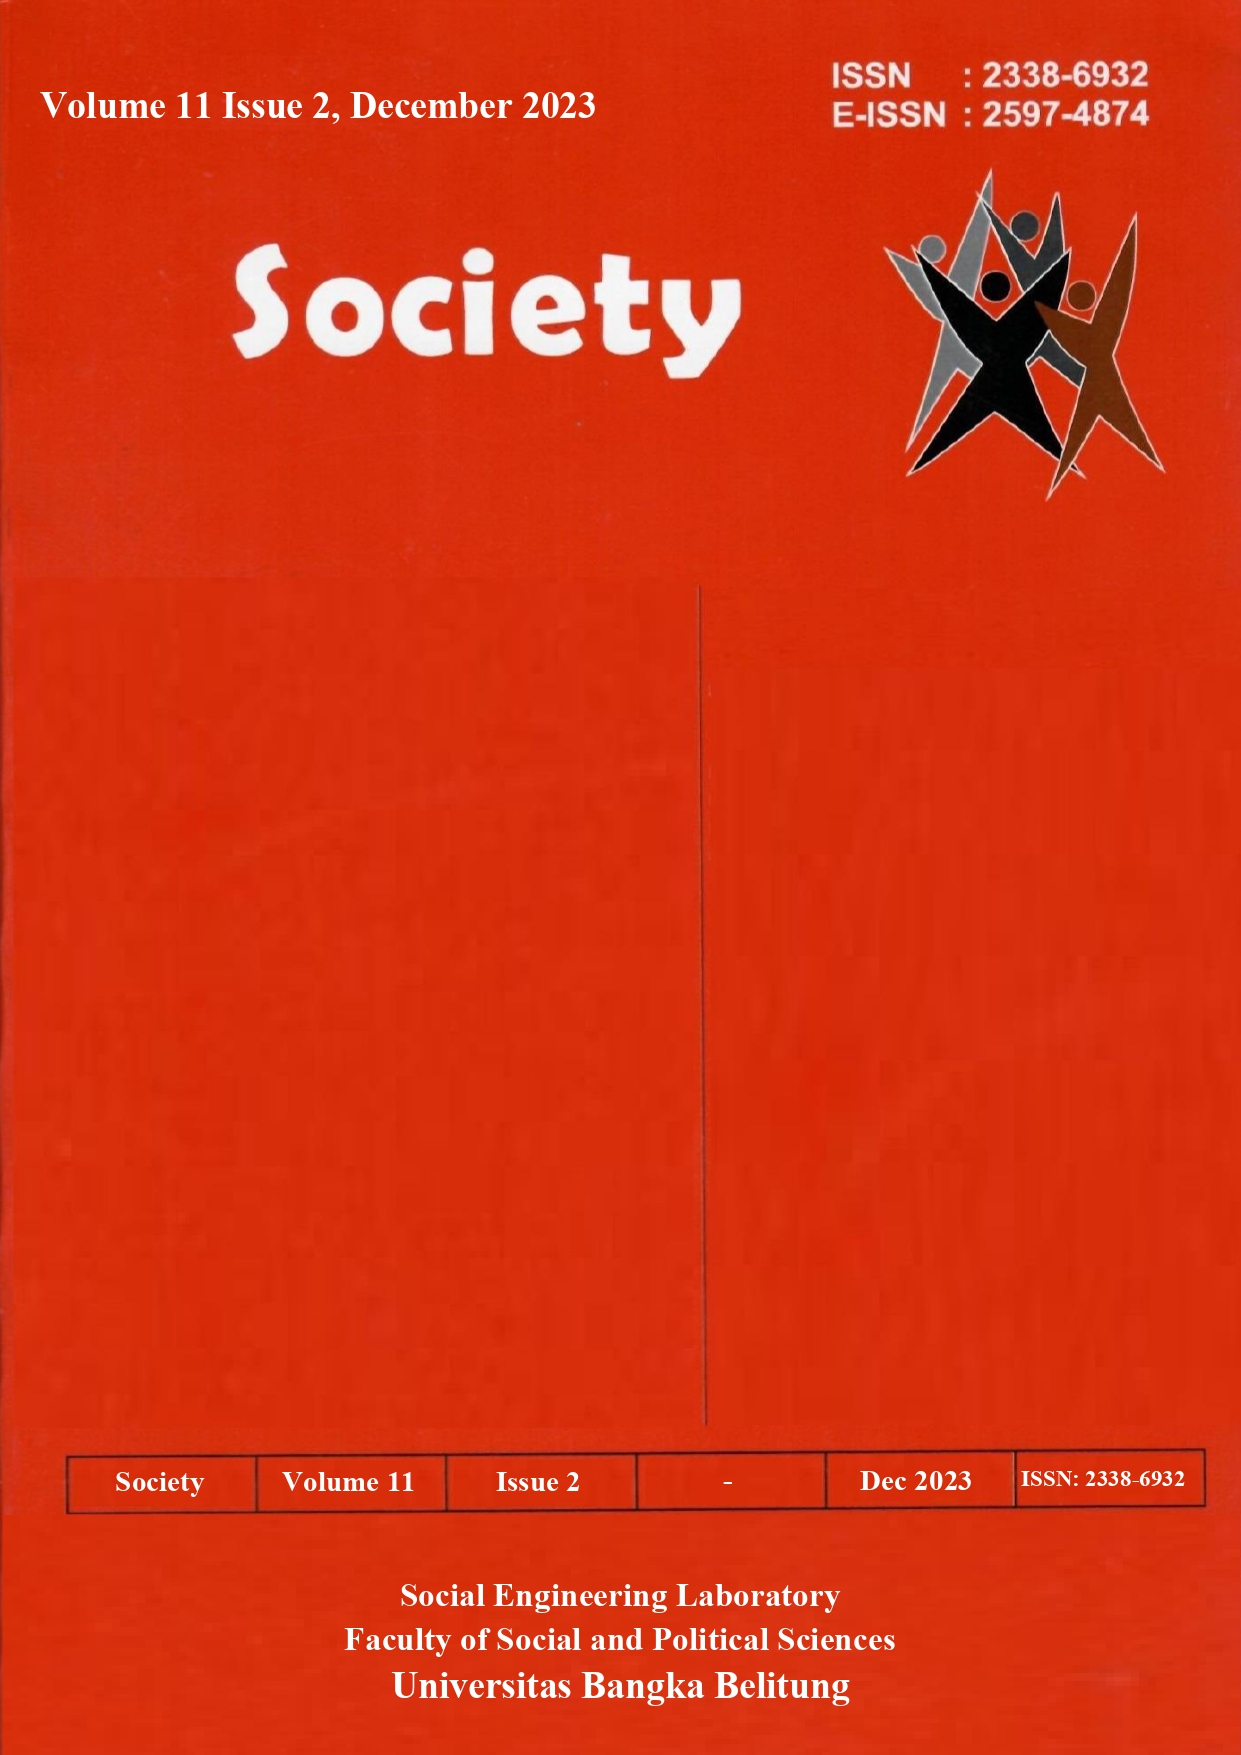 Society Volume 11 Issue 2#2023